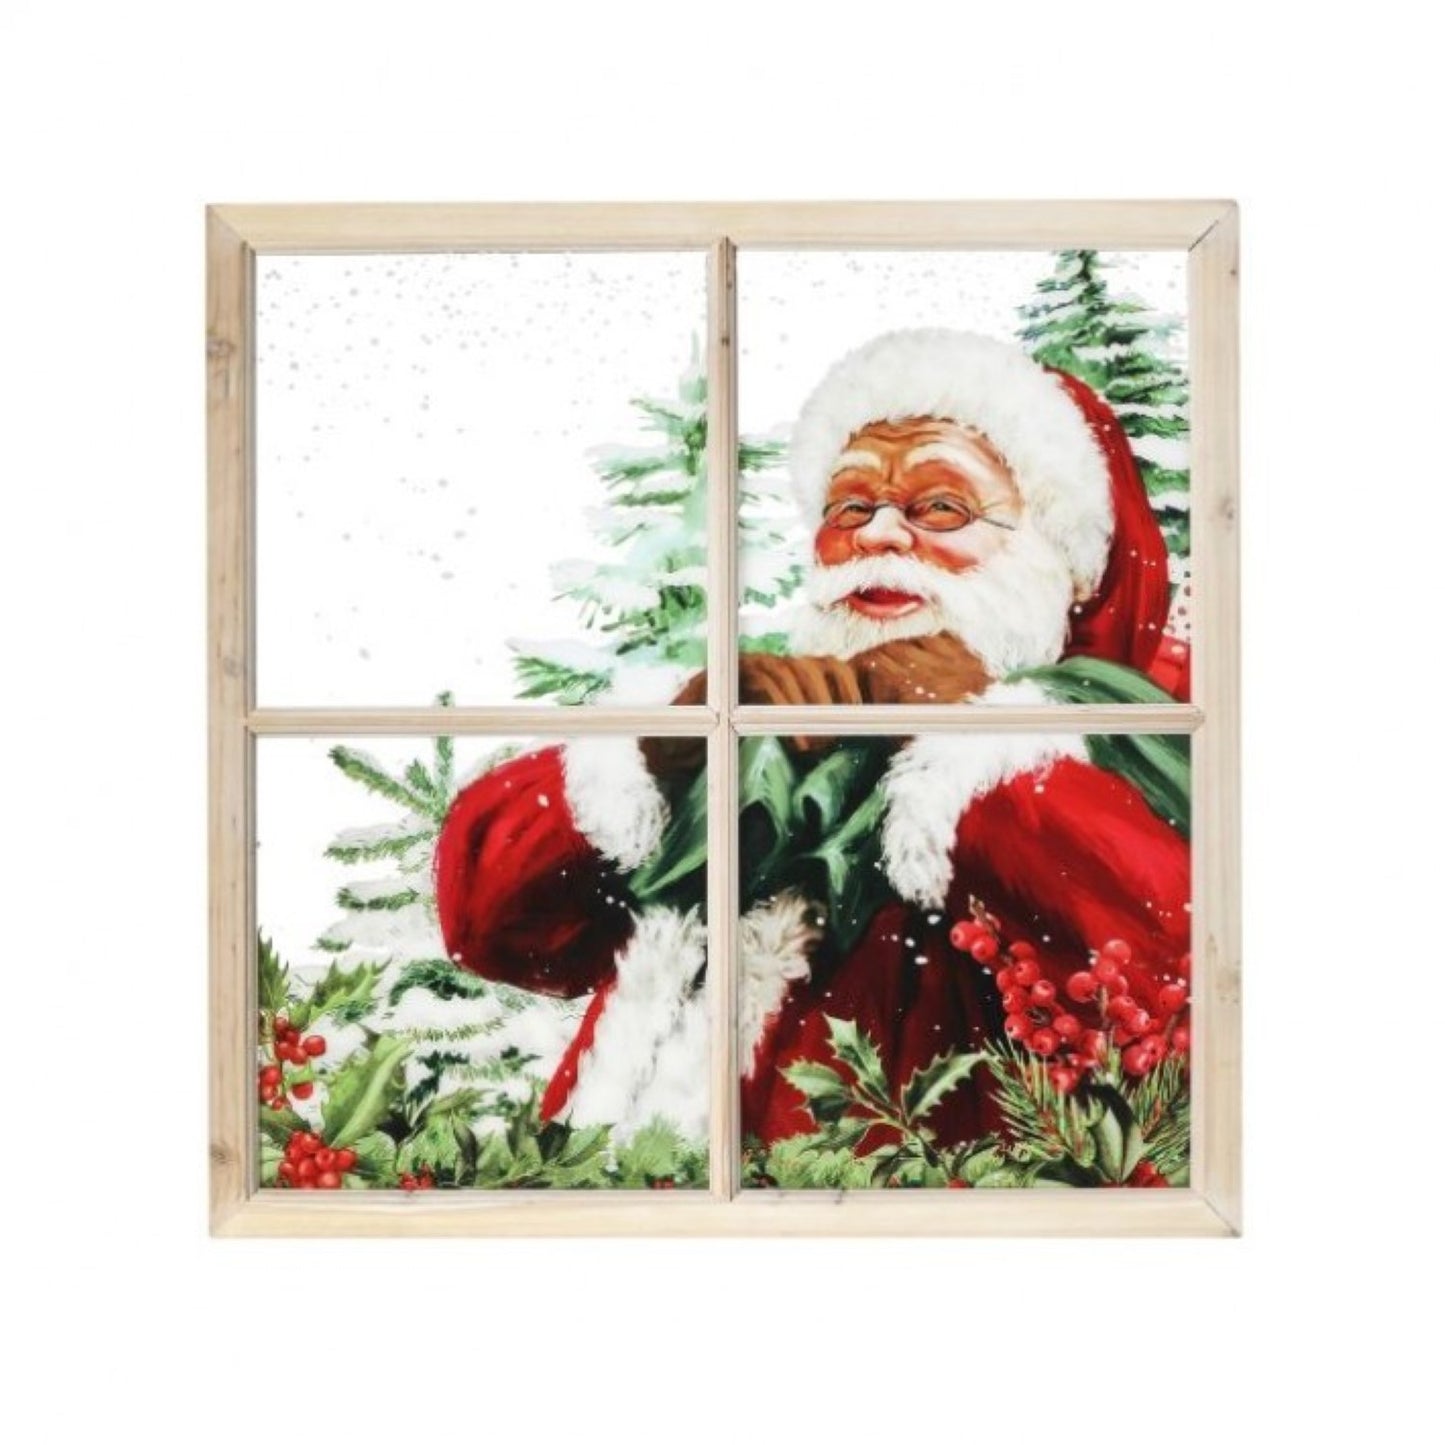 Regency International 25"X25" Acrylic Smiling Santa Window